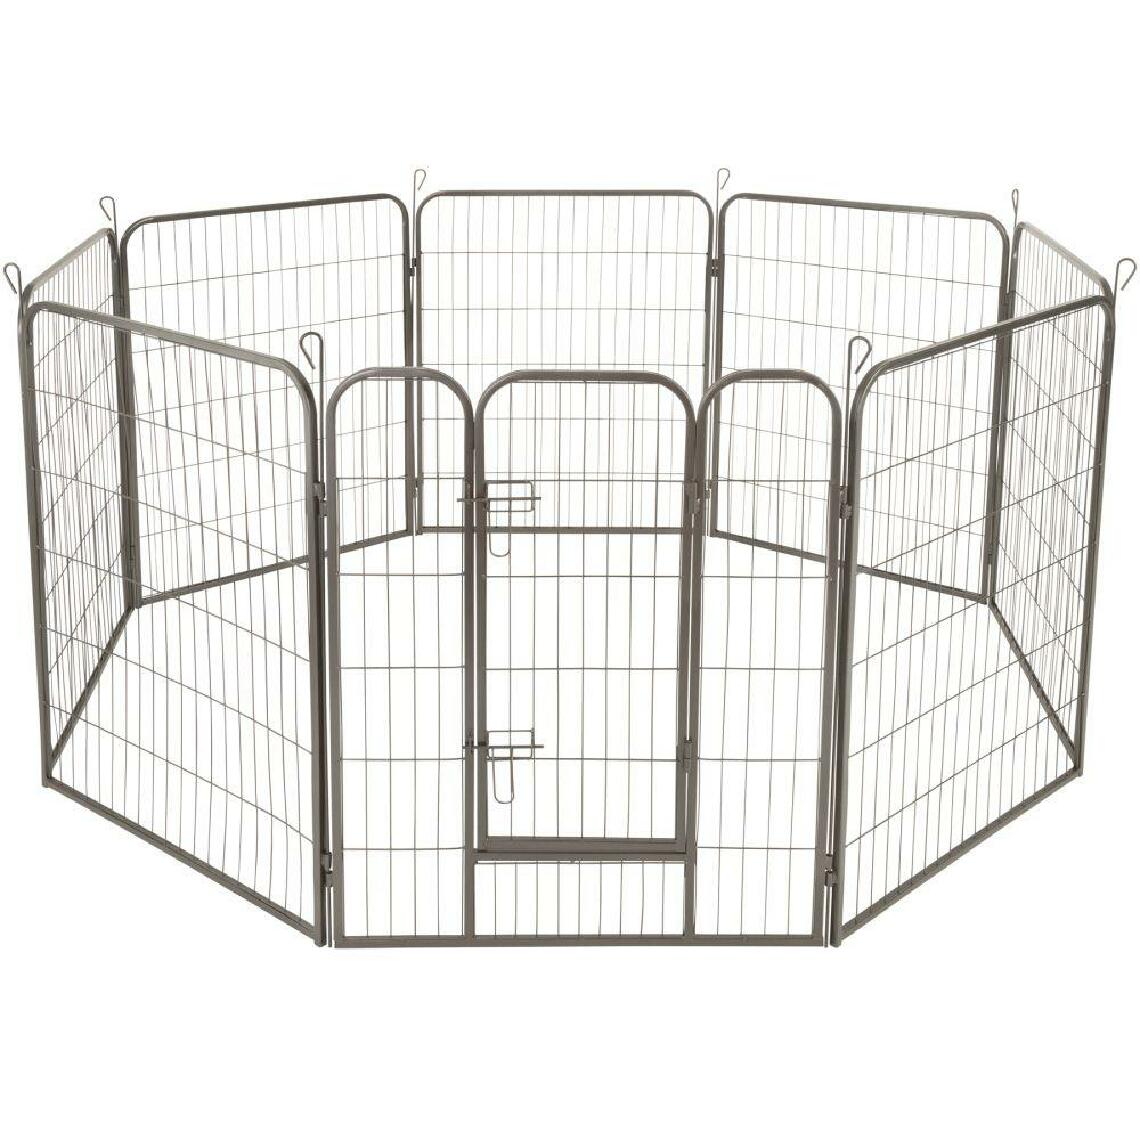 Helloshop26 - Enclos cage pour chien modulable 100 cm 3708148 - Clôture pour chien